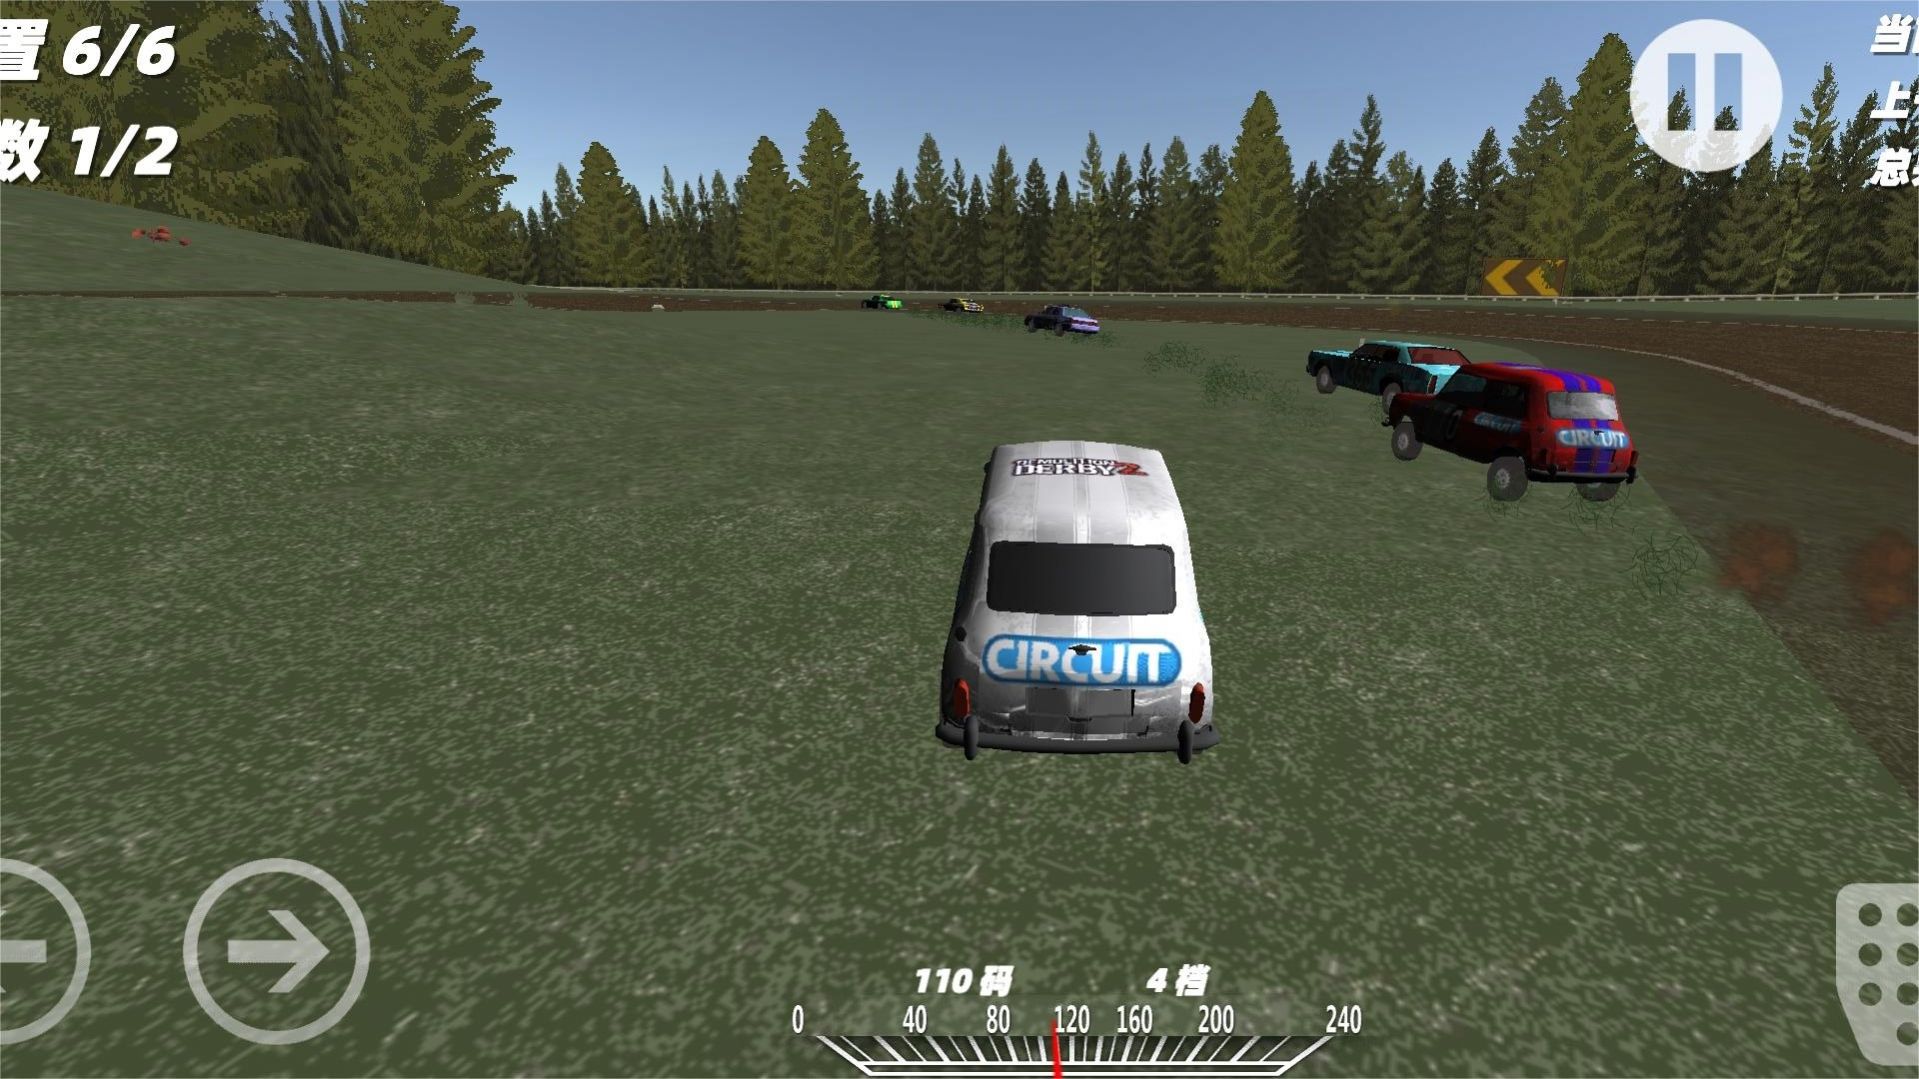 模拟真实车祸事故游戏官方最新版  v1.0图1